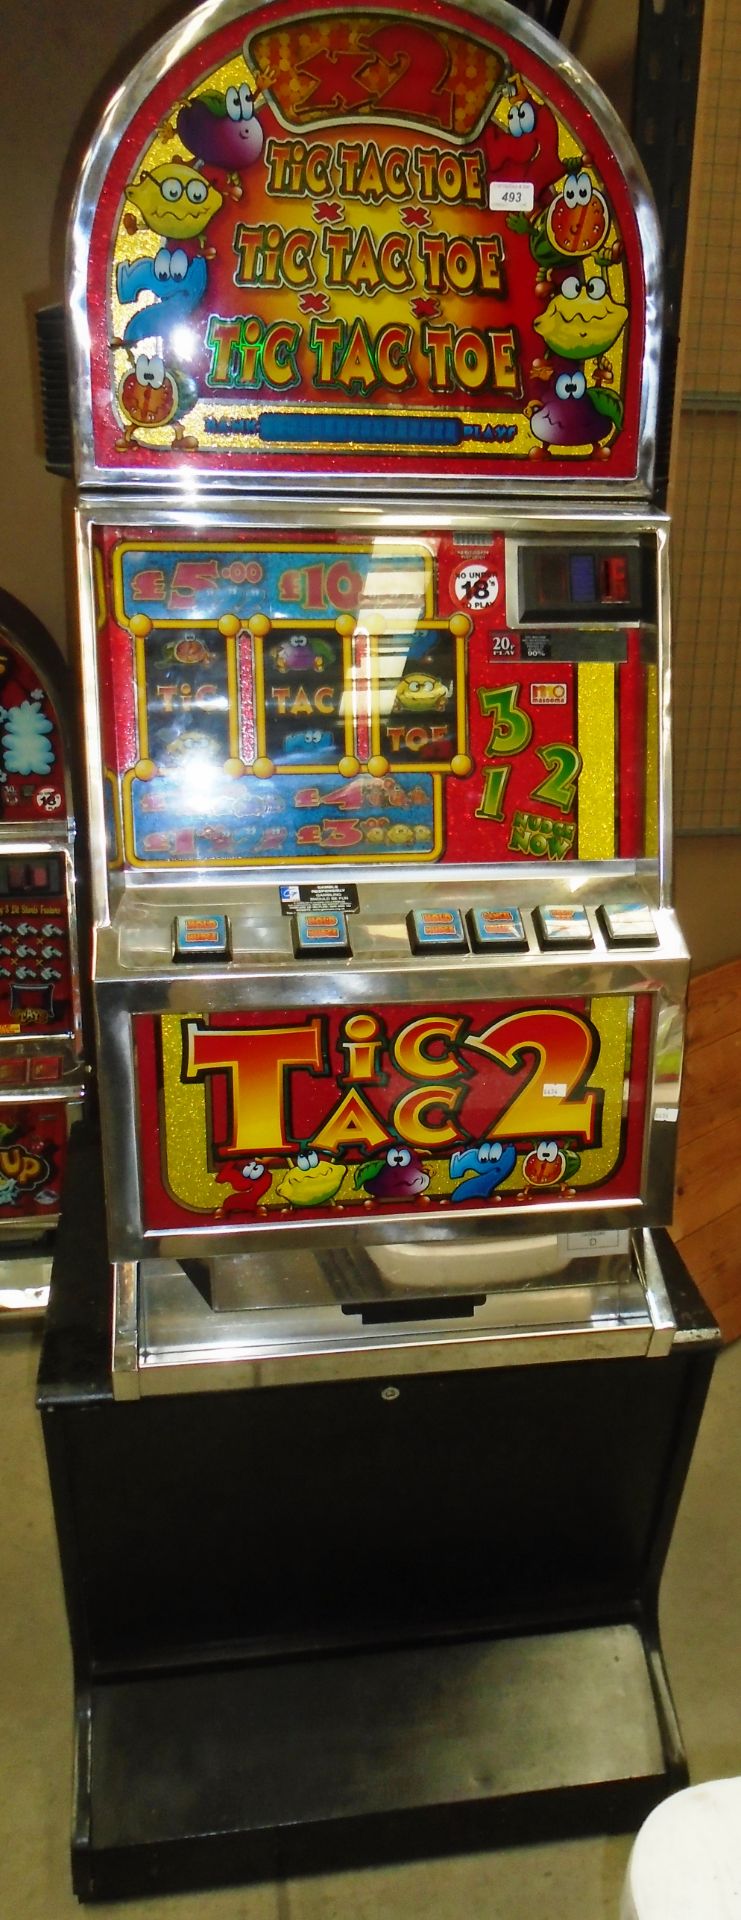 A Mazooma Tic Tac Toe coin operated slot machine - 240v